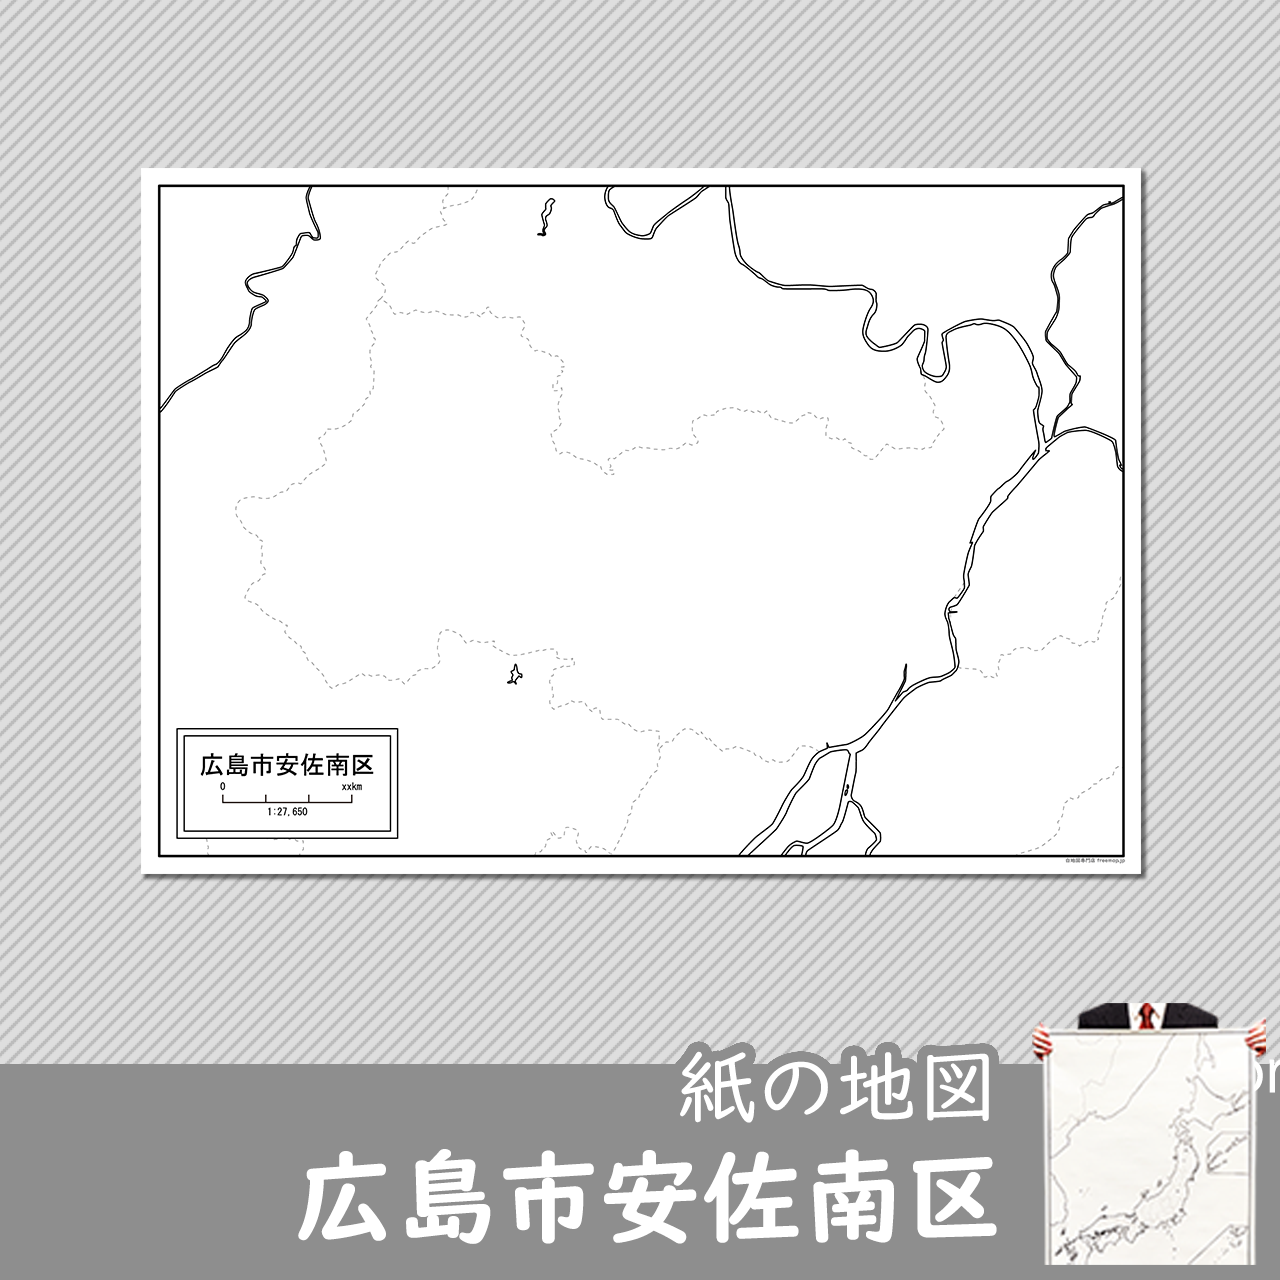 広島市安佐南区の紙の白地図のサムネイル